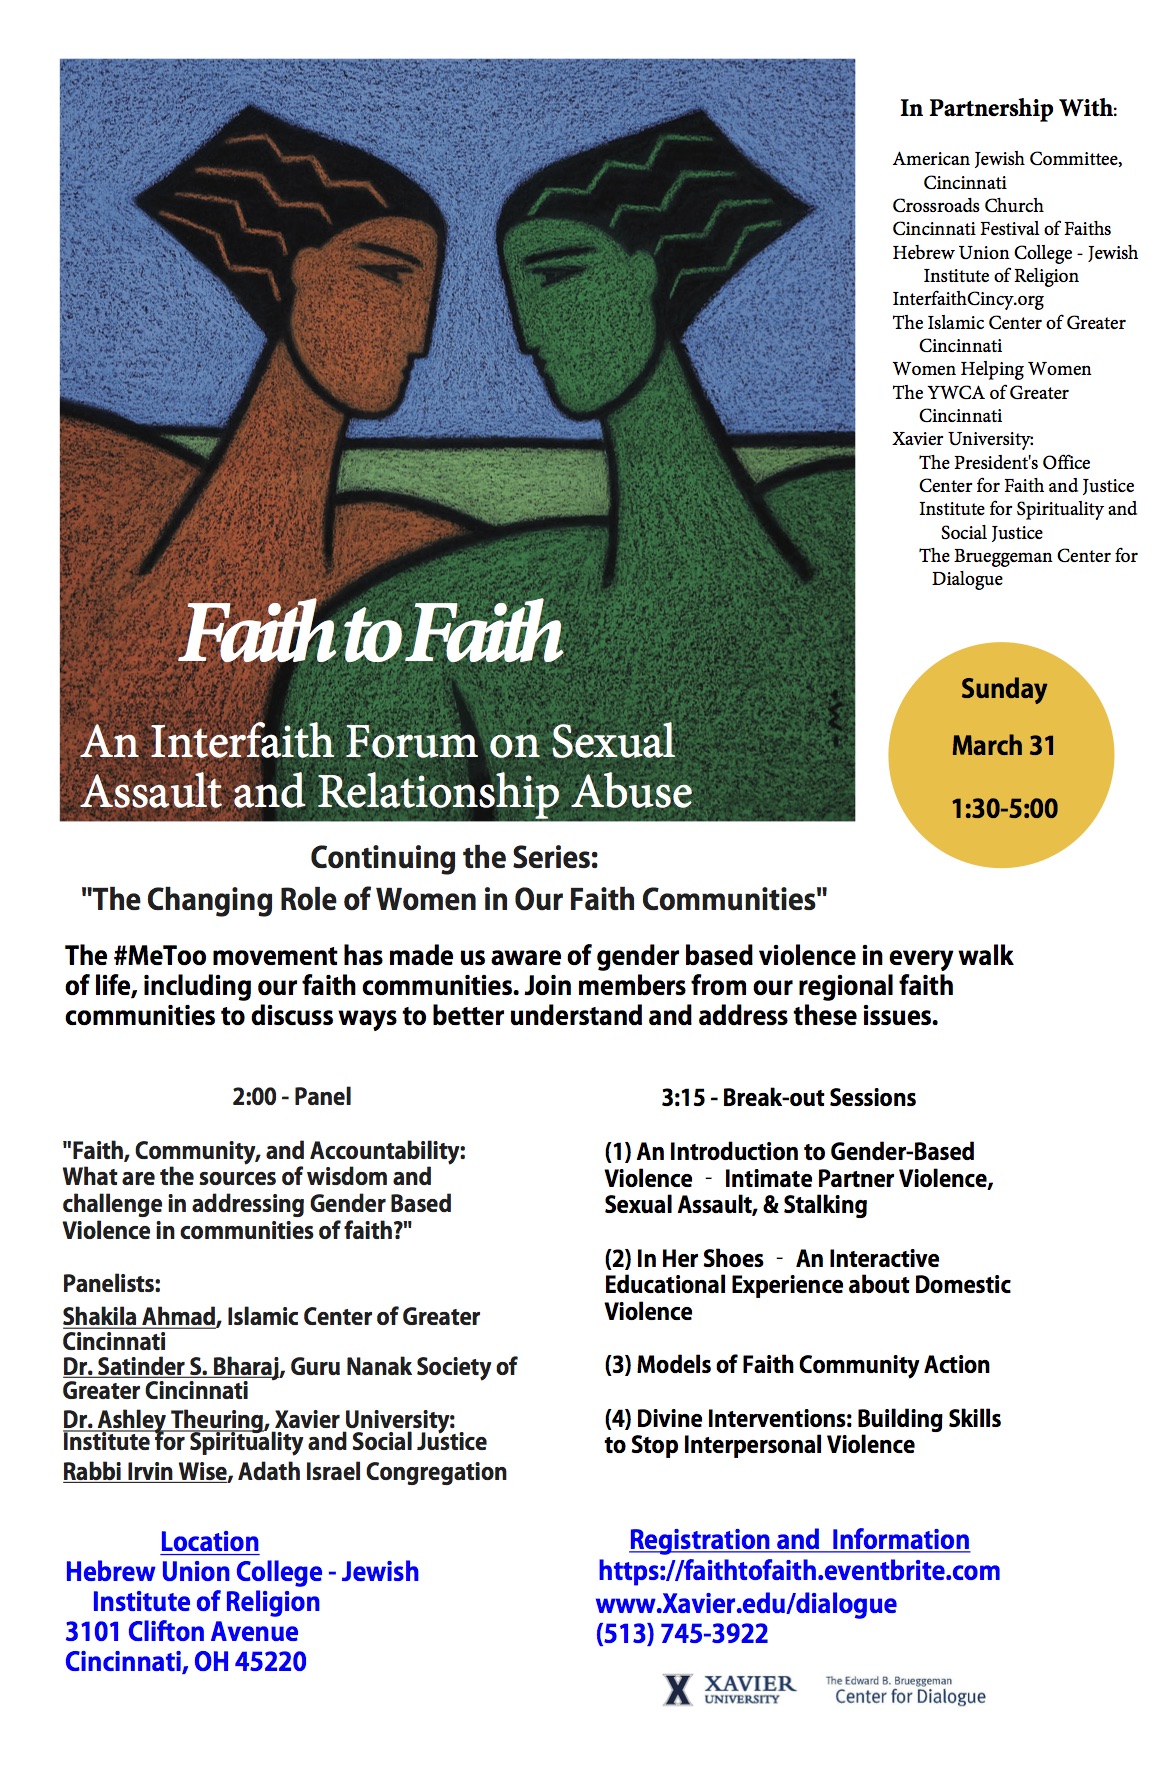 Faith to Faith Event Flyer